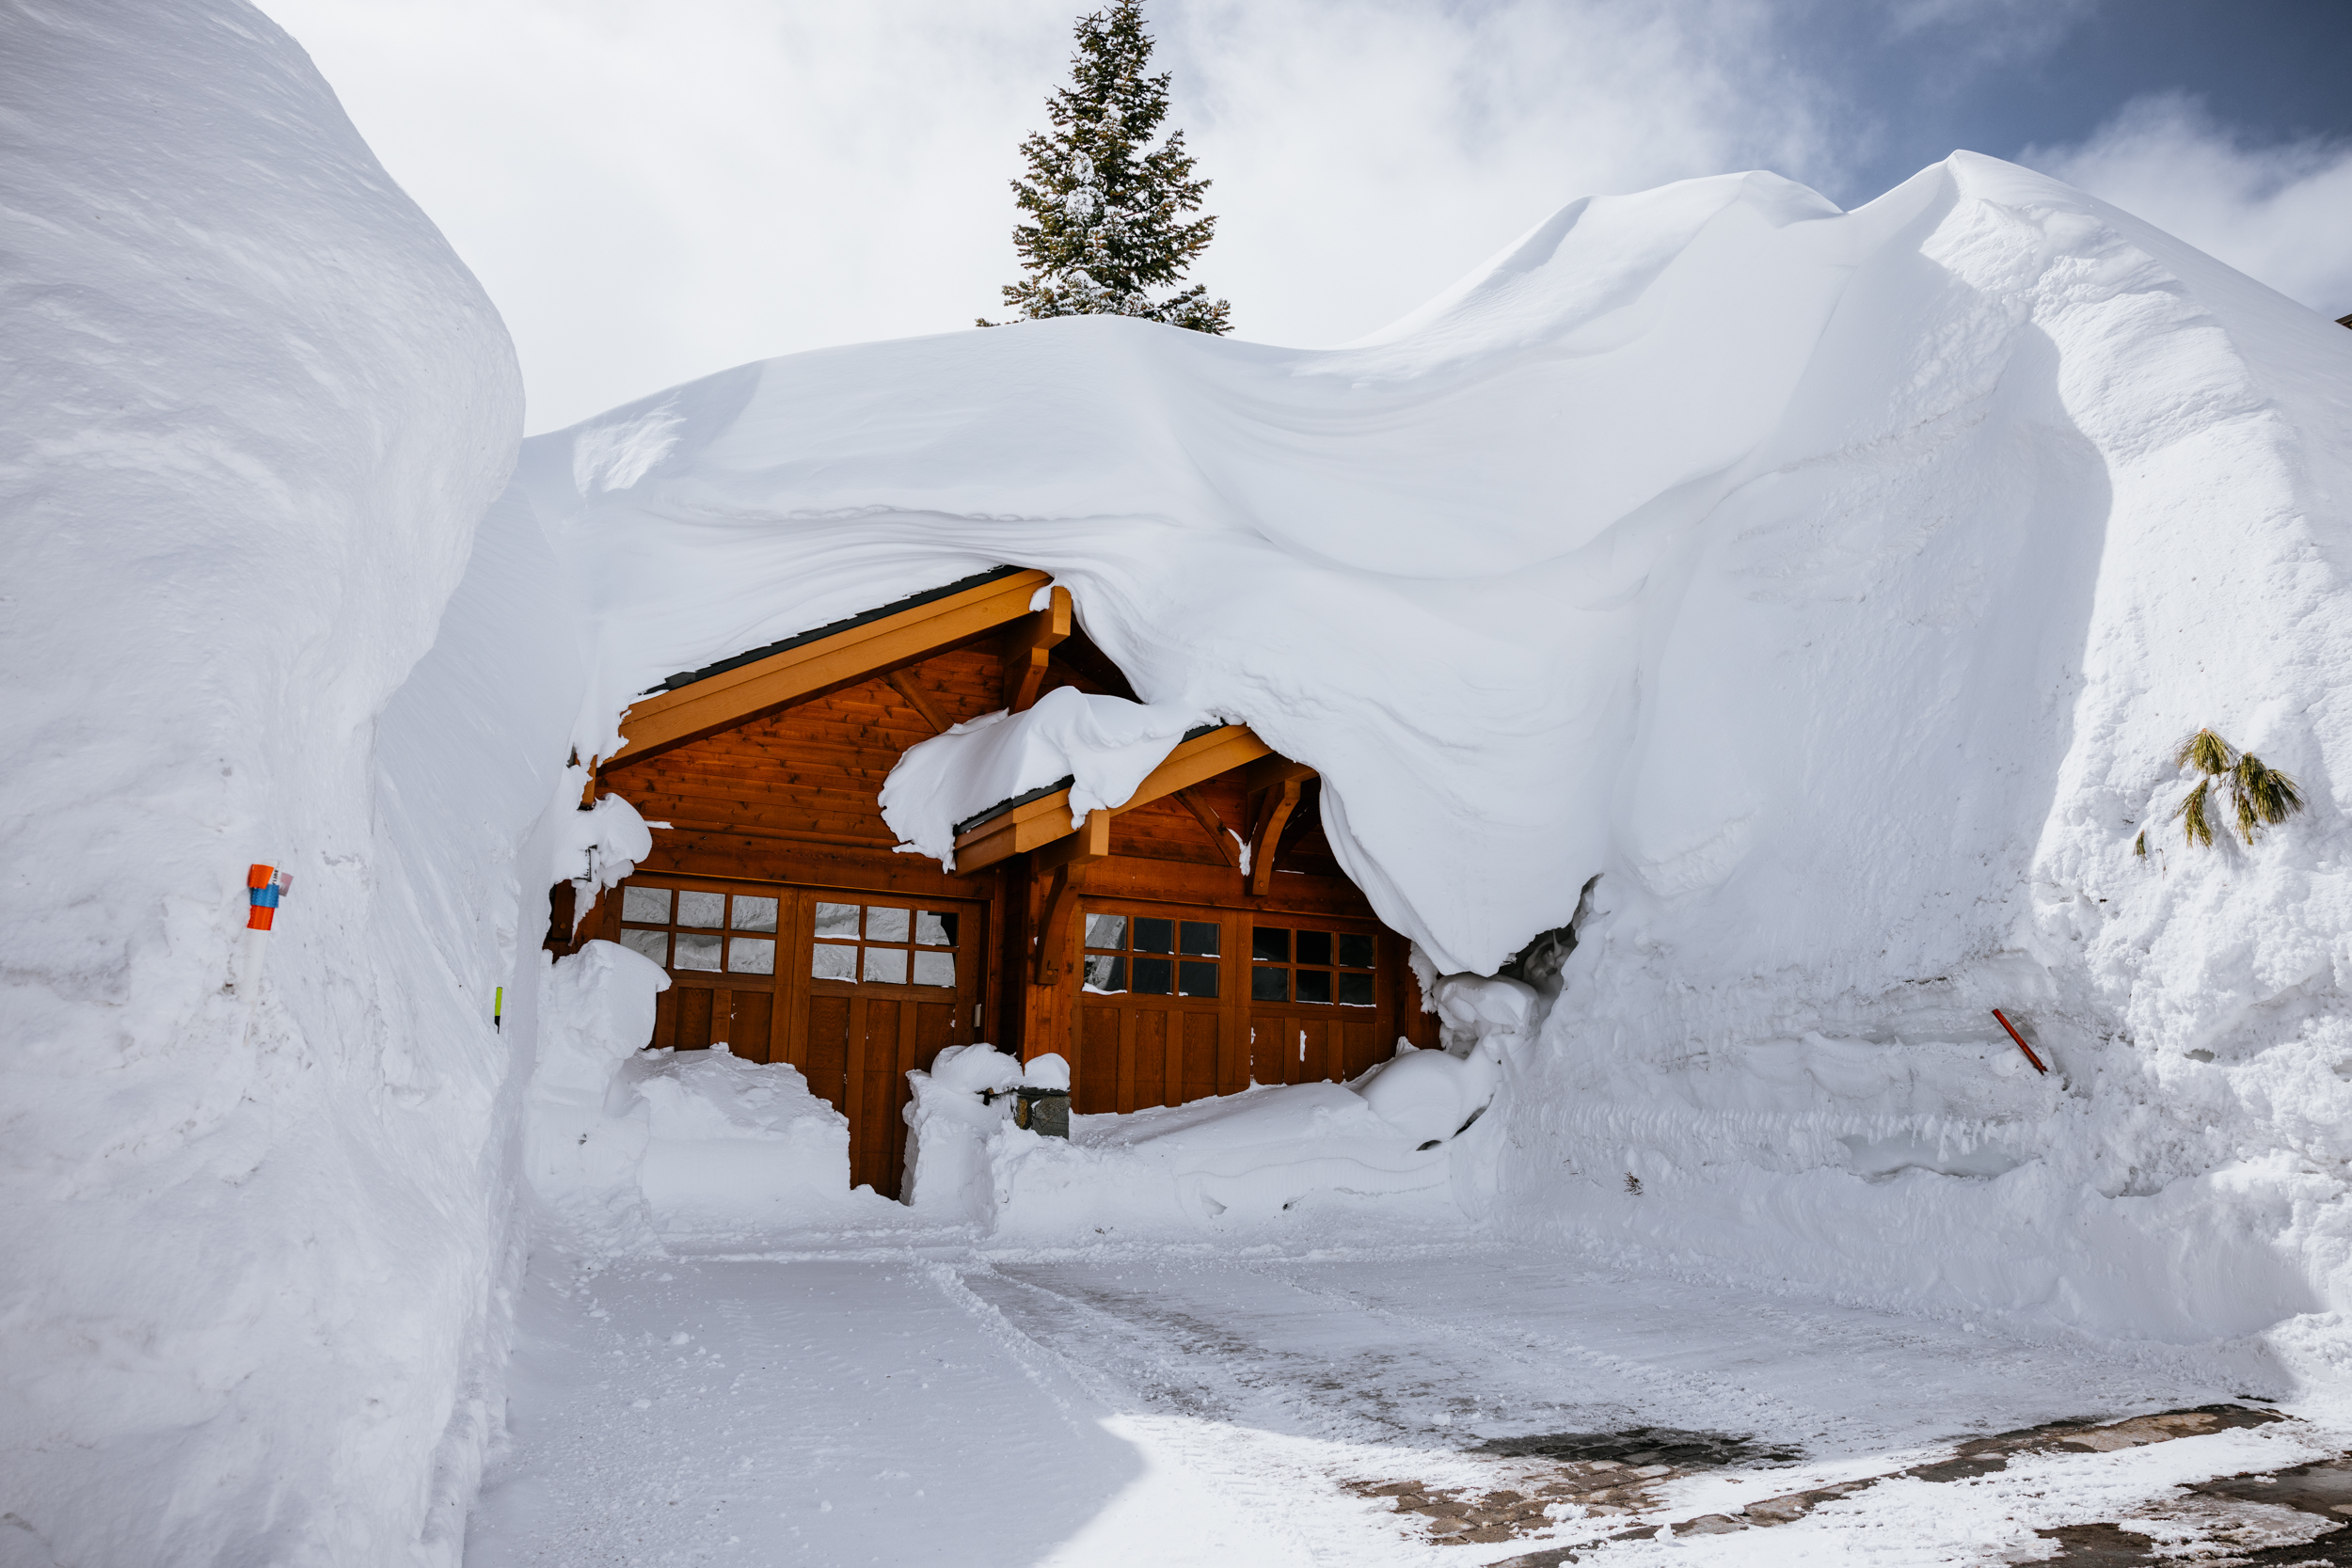 House buried in meters of snow